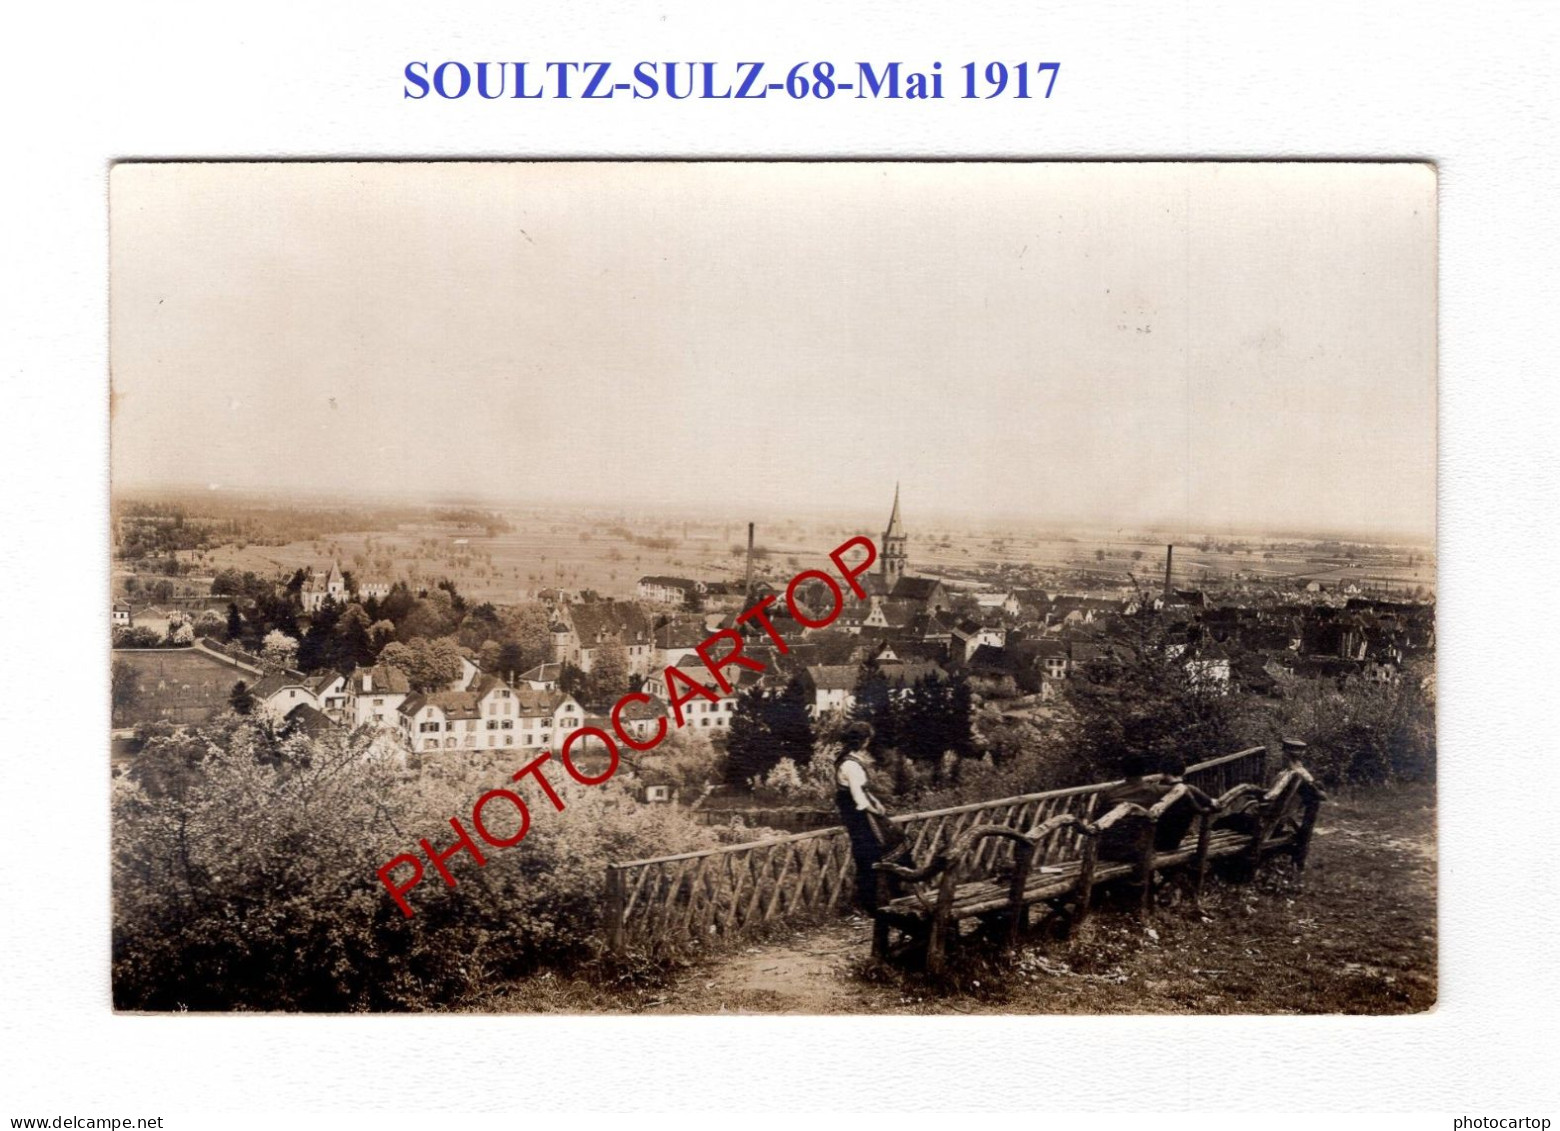 SOULTZ-SULZ-68-MAI 1917-CARTE PHOTO Allemande-GUERRE 14-18-1 WK-Militaria - Soultz